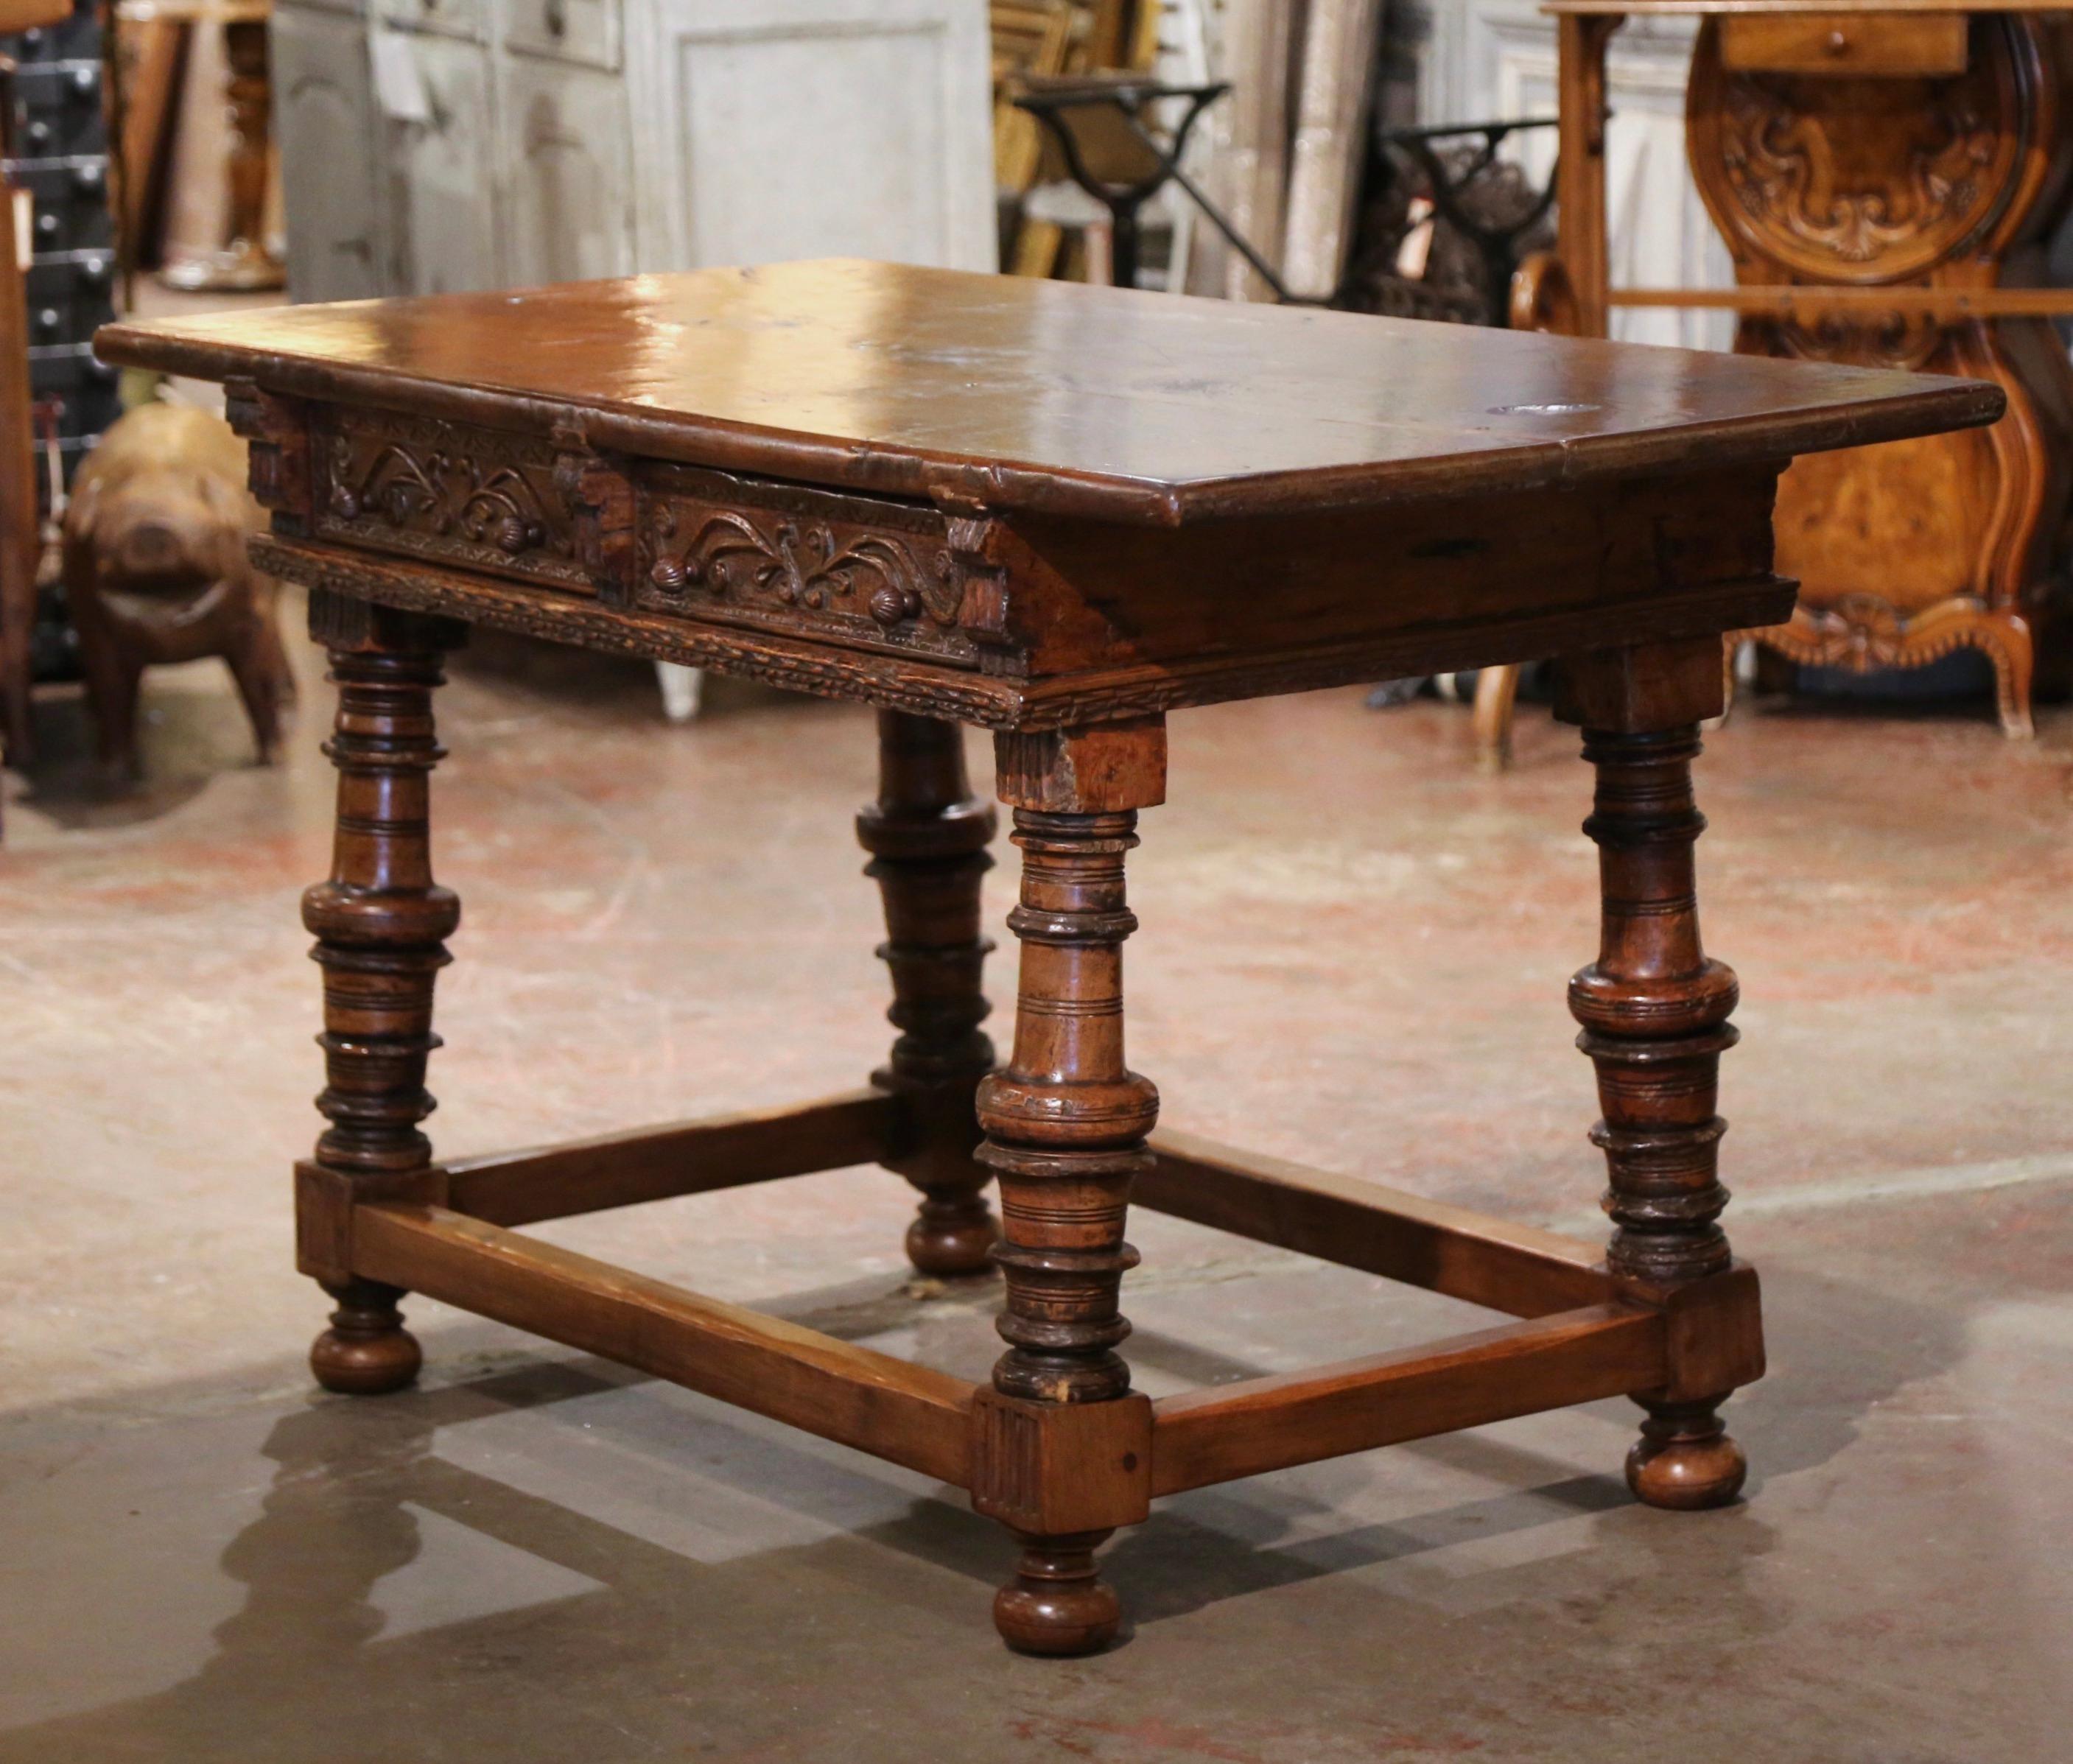 Der um 1760 in Spanien gefertigte antike Schreibtisch steht auf dicken, geschnitzten, gedrechselten Beinen, die mit Ballenfüßen enden, und ist mit einer eleganten, rechteckigen Kastenstreckung am Sockel verziert. Der hohe Tisch verfügt über zwei